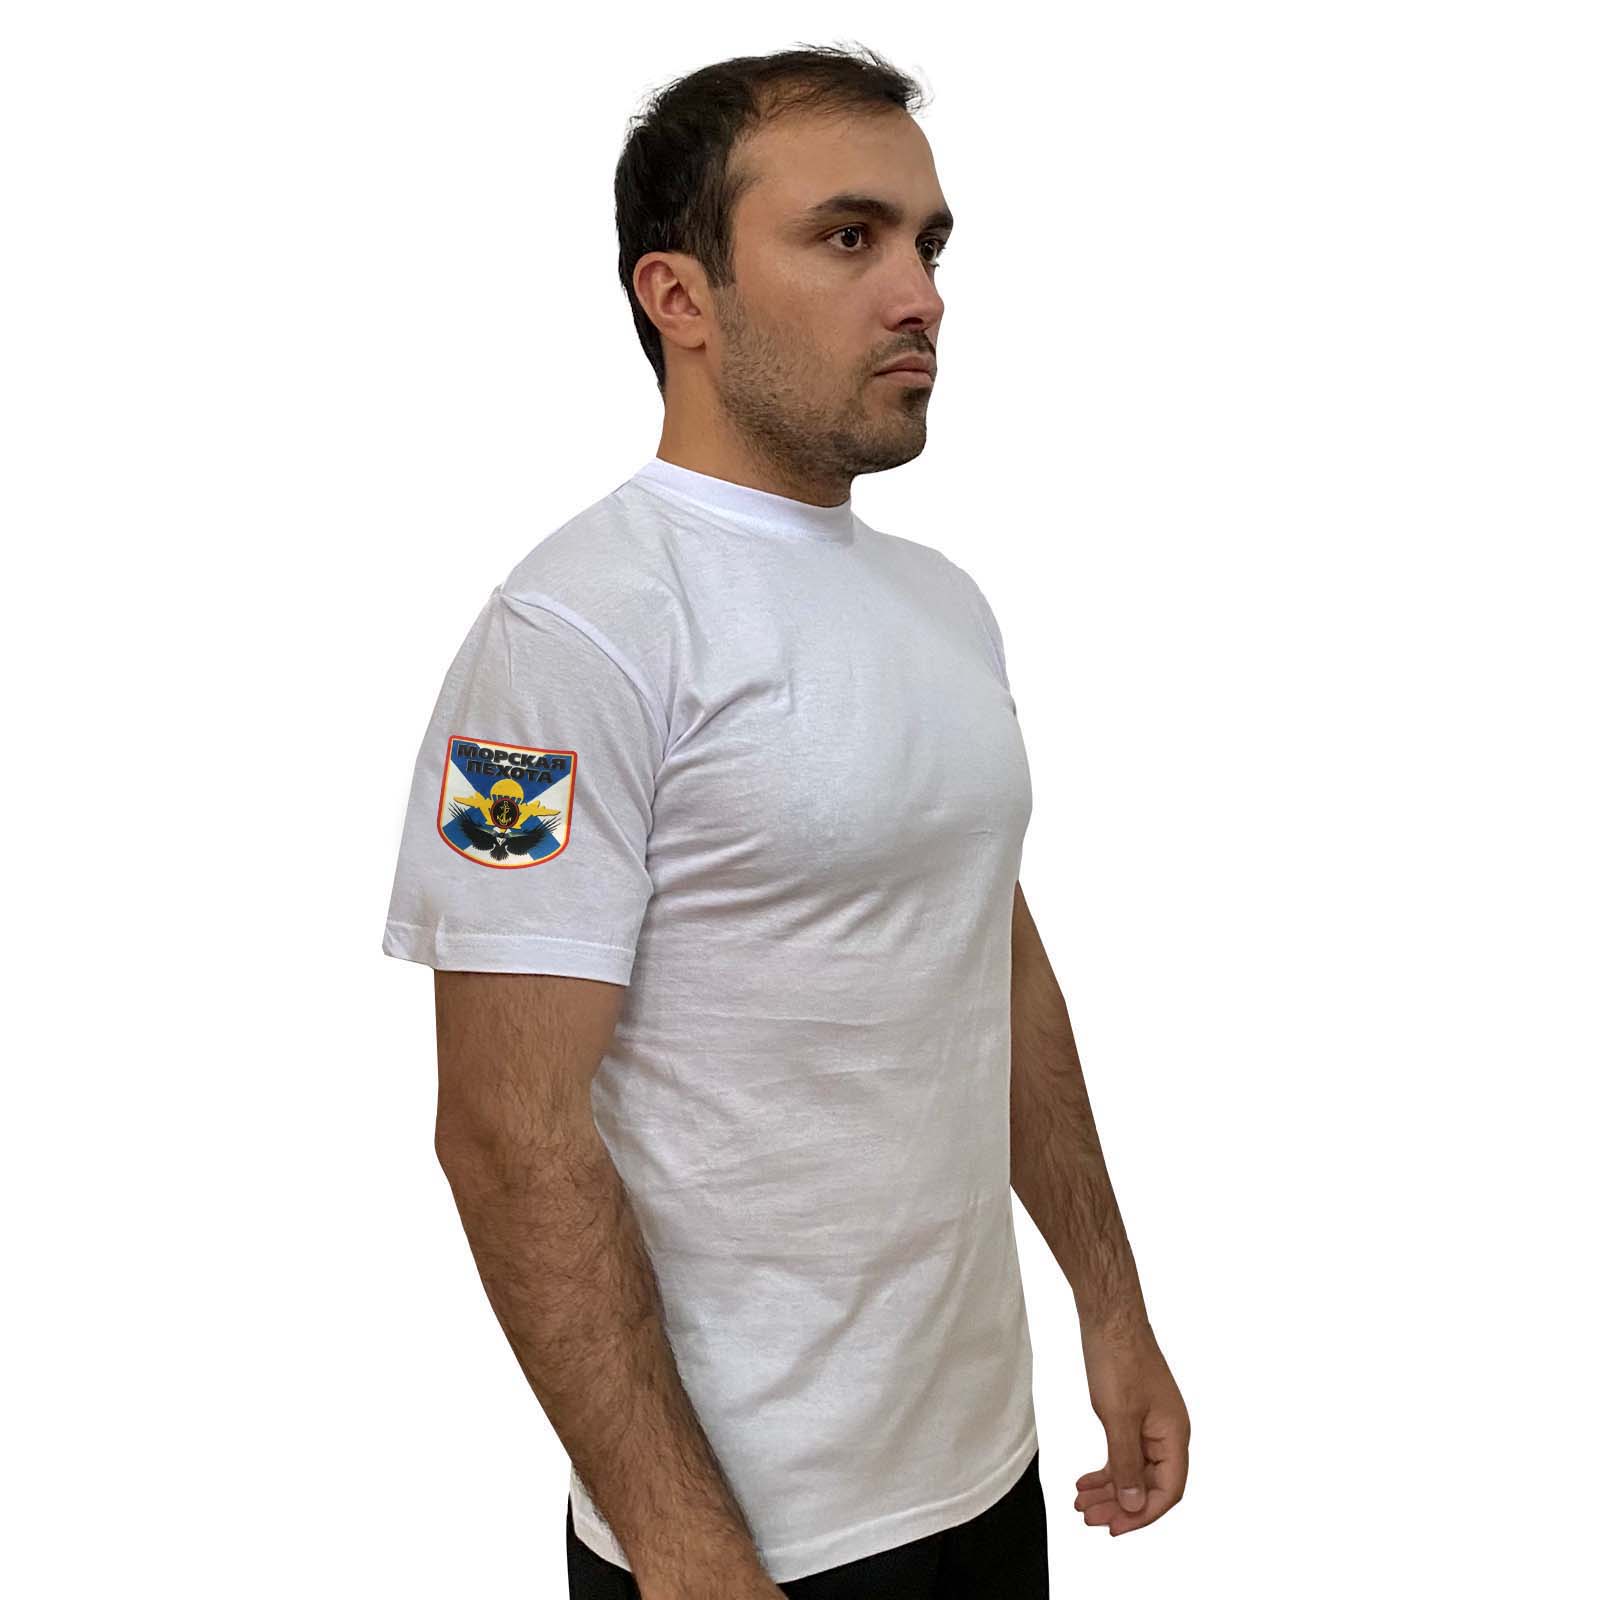 Белая футболка с термопринтом "Морская пехота" на рукаве